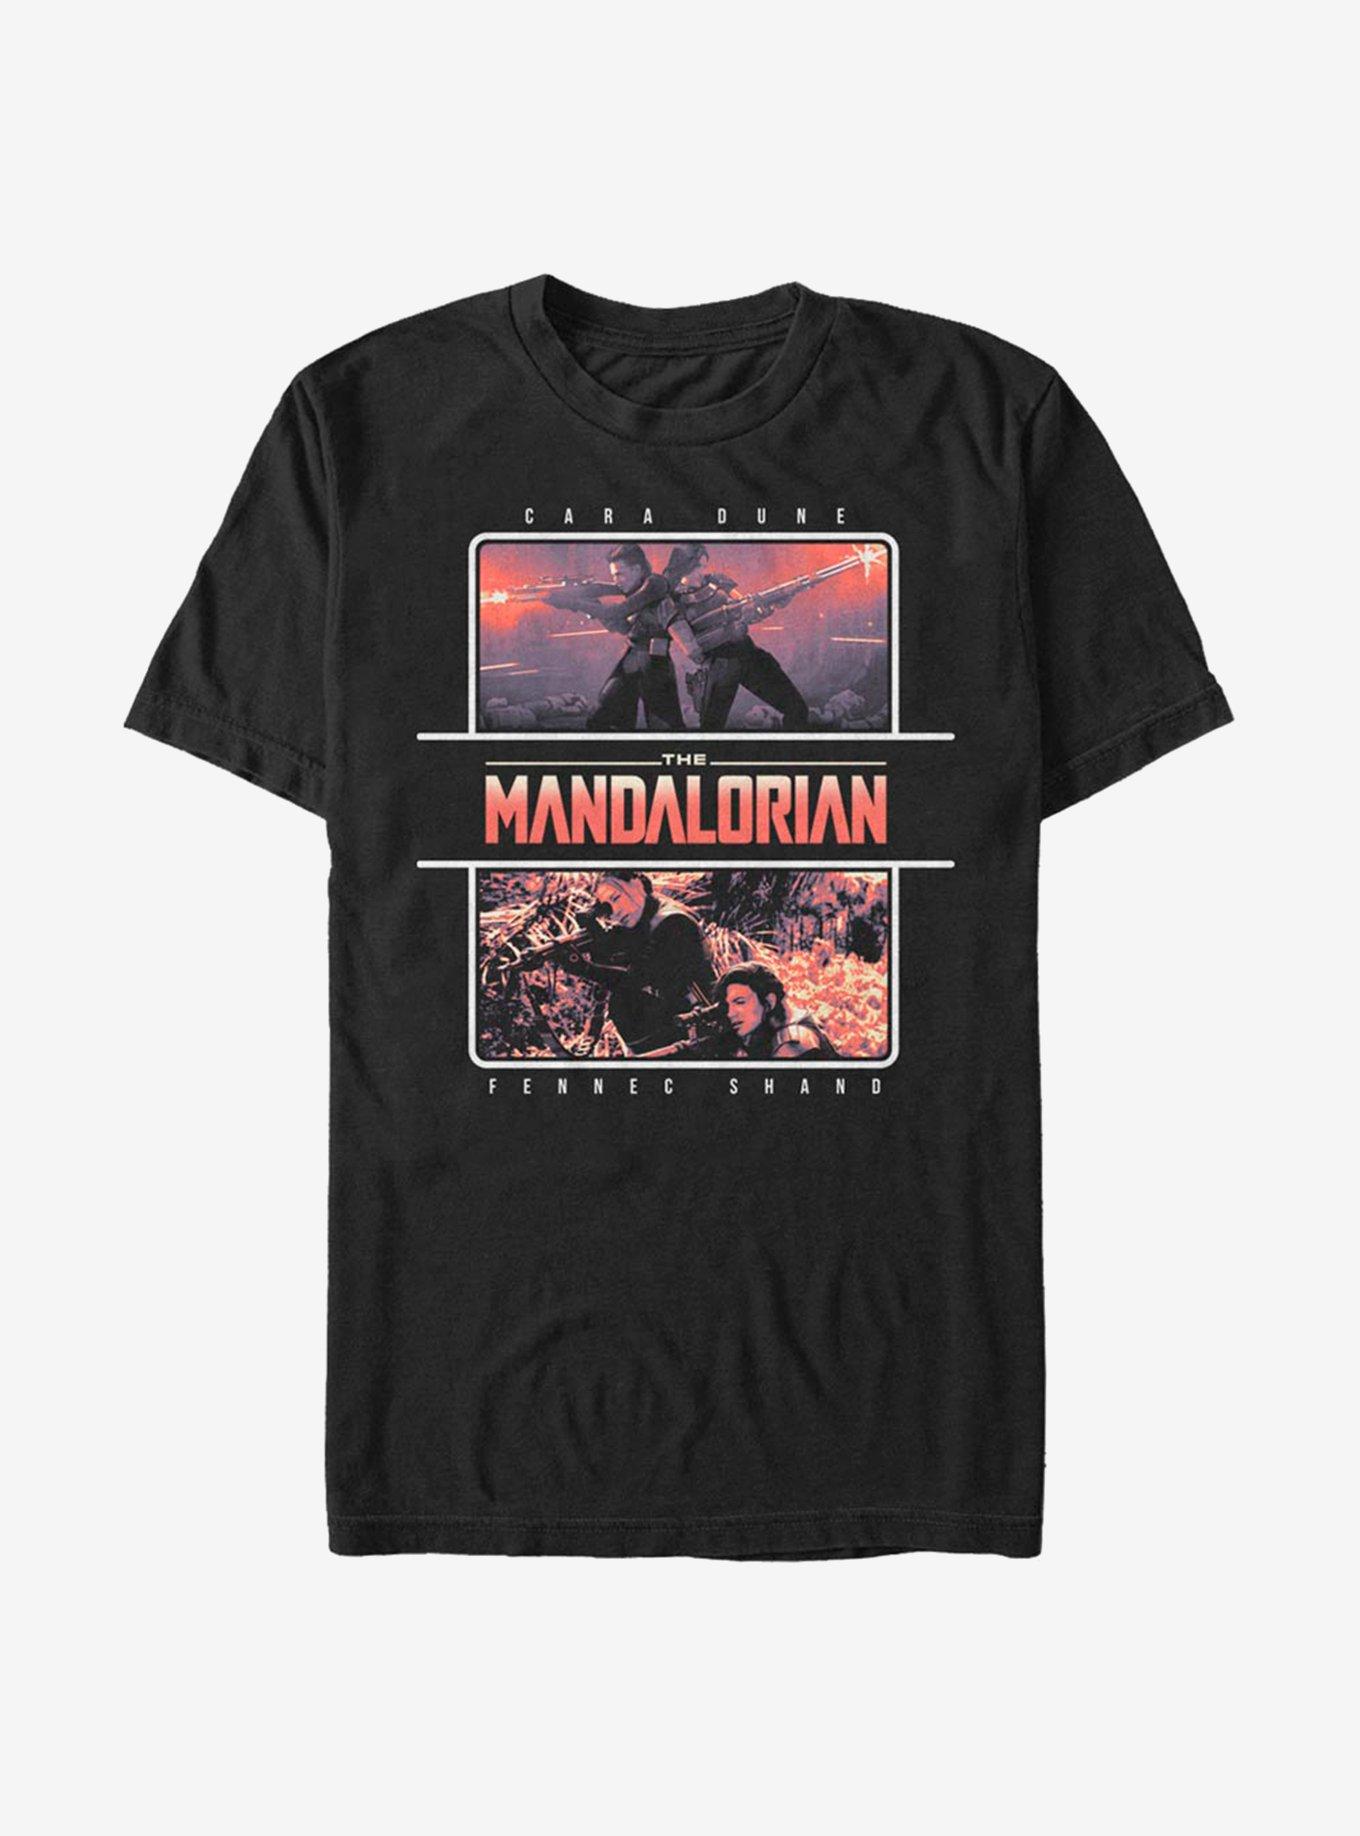 Star Wars The Mandalorian Season 2 Dune Shand Team T-Shirt, BLACK, hi-res